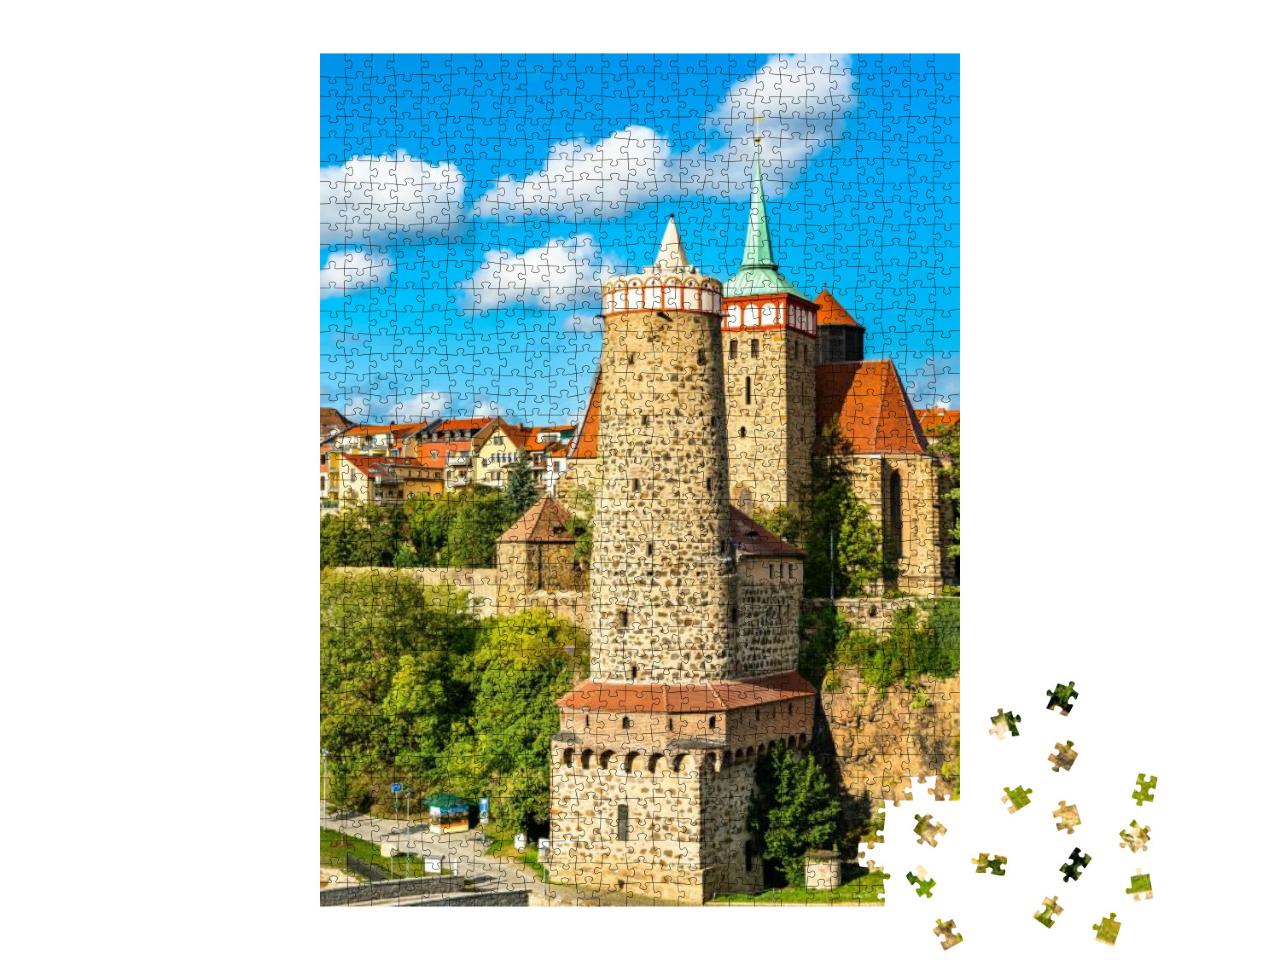 Alte Wasserkunst Tower & Michaeliskirche Church in Bautze... Jigsaw Puzzle with 1000 pieces